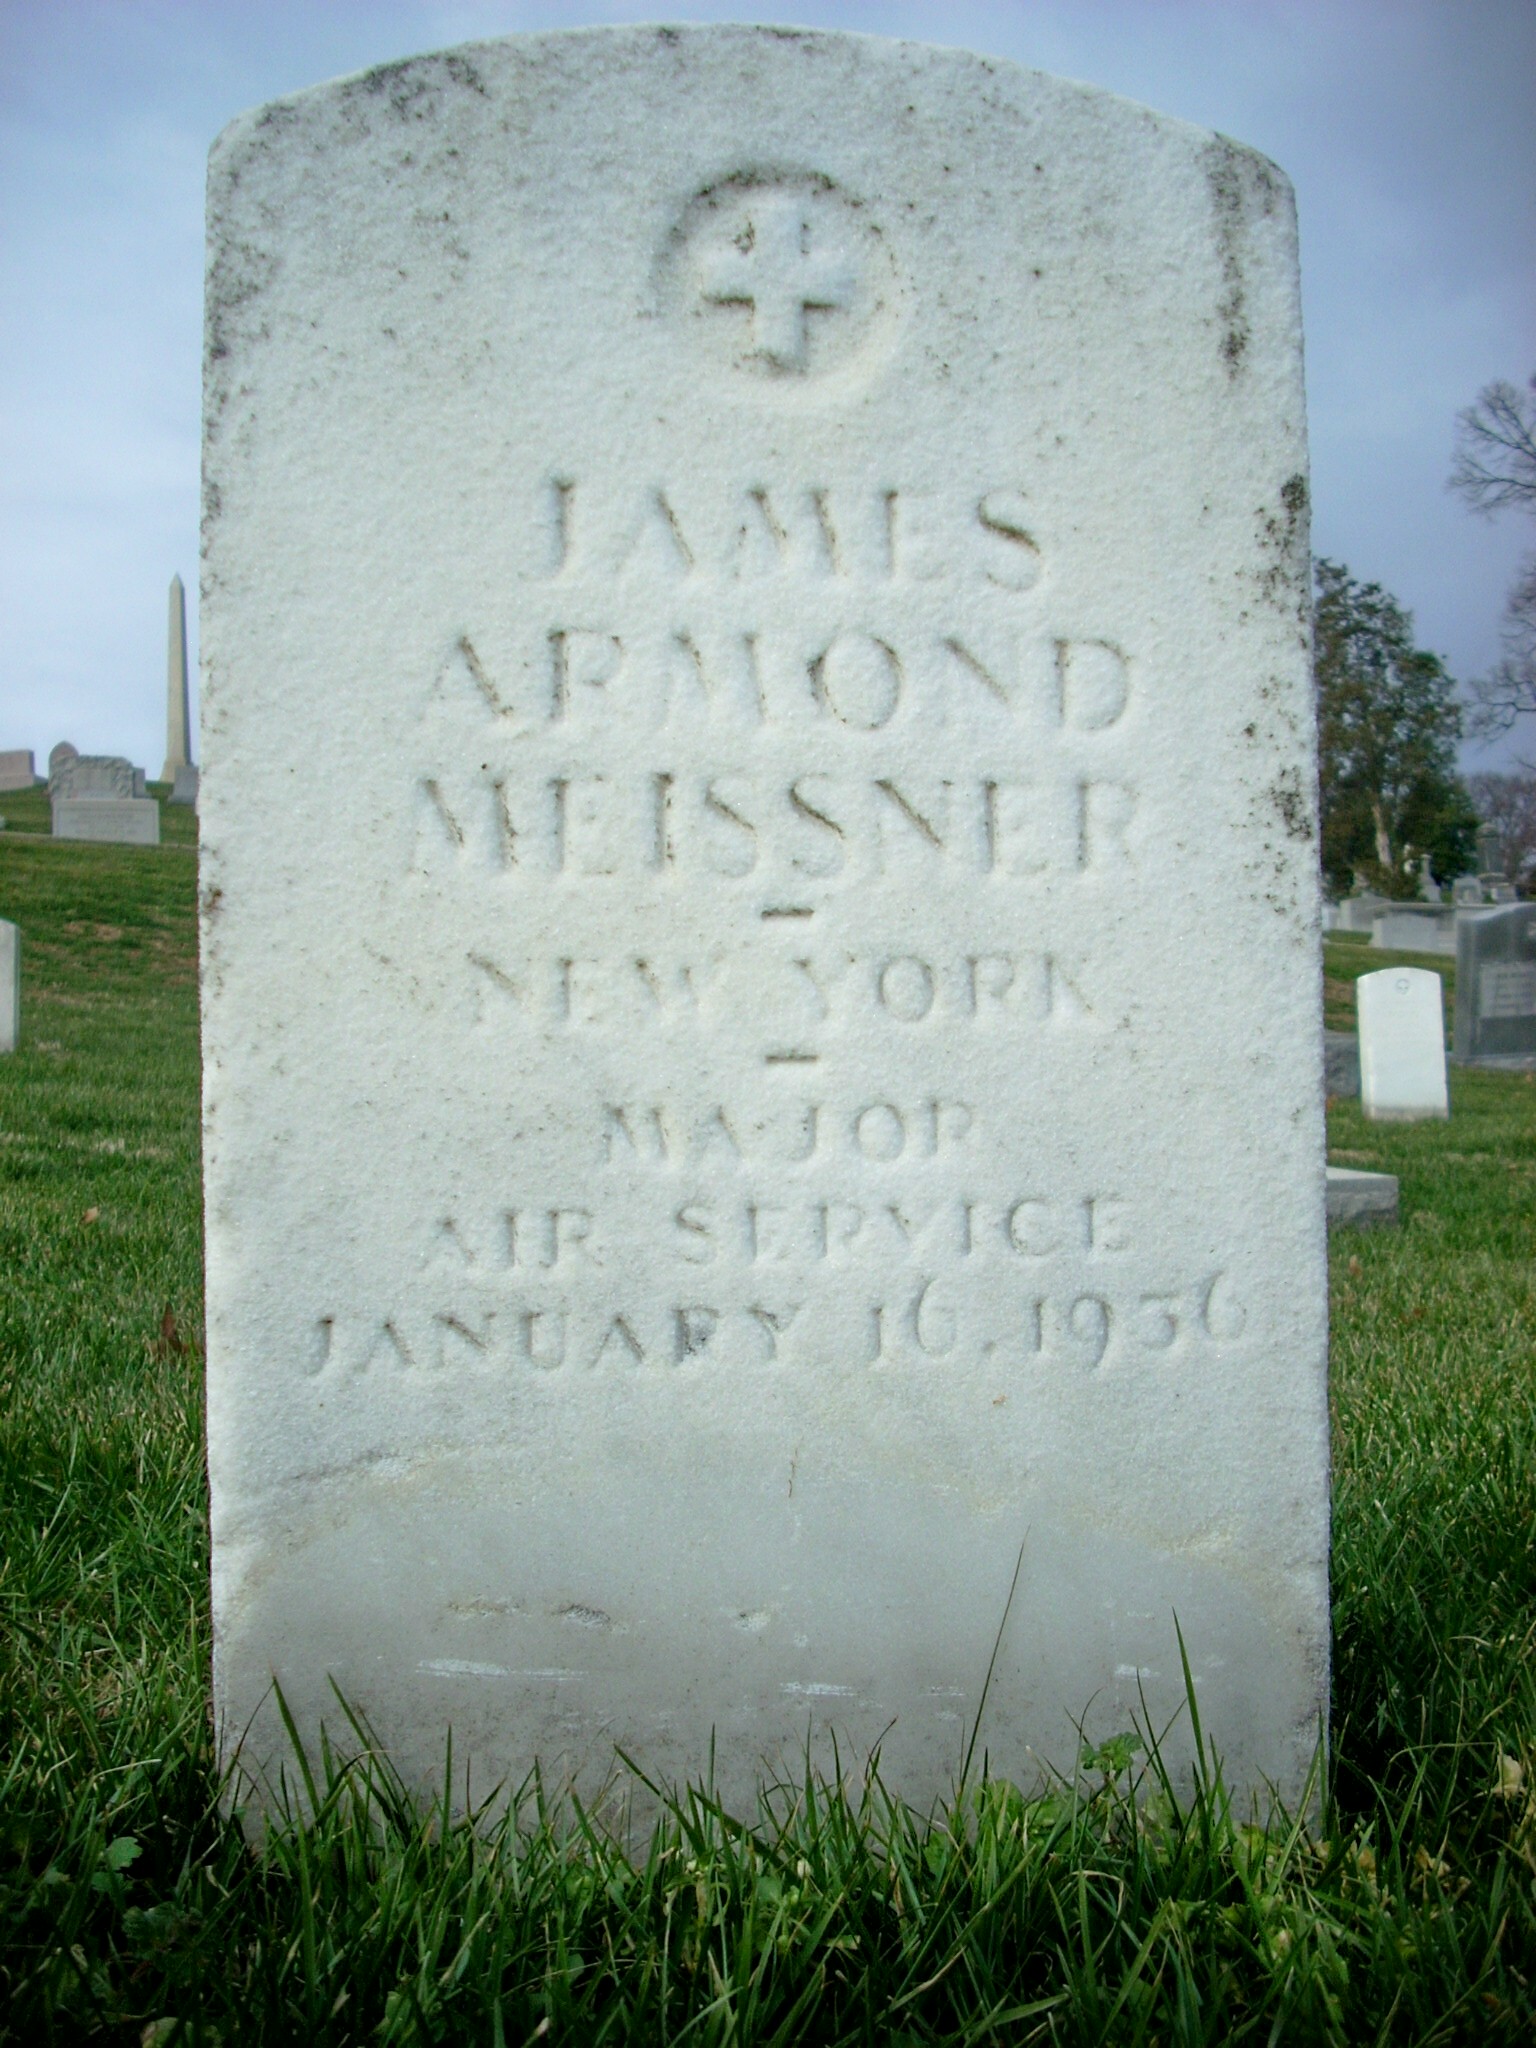 jameissner-gravesite-photo-january-2009-007